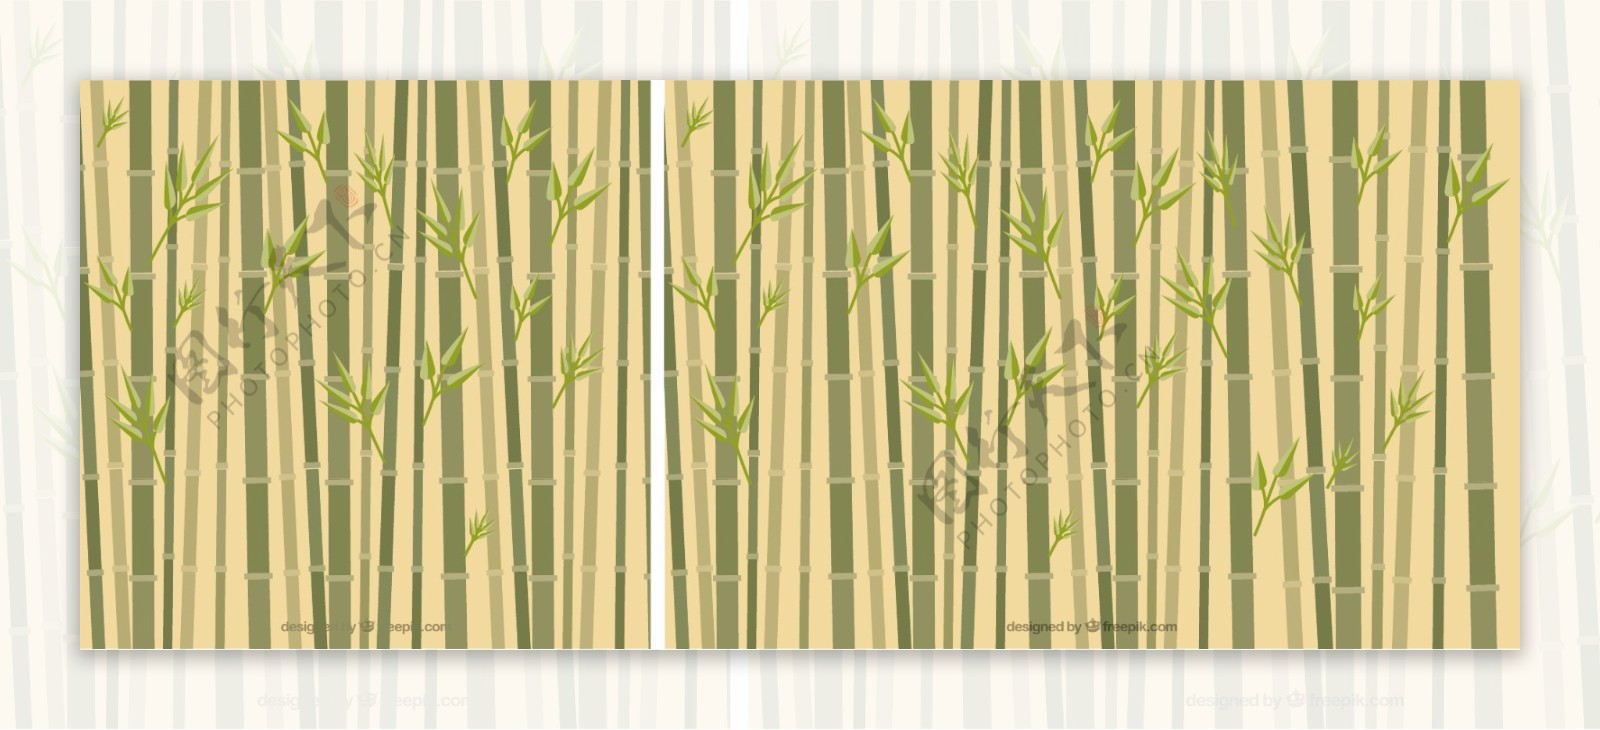 竹背景扁平化风格